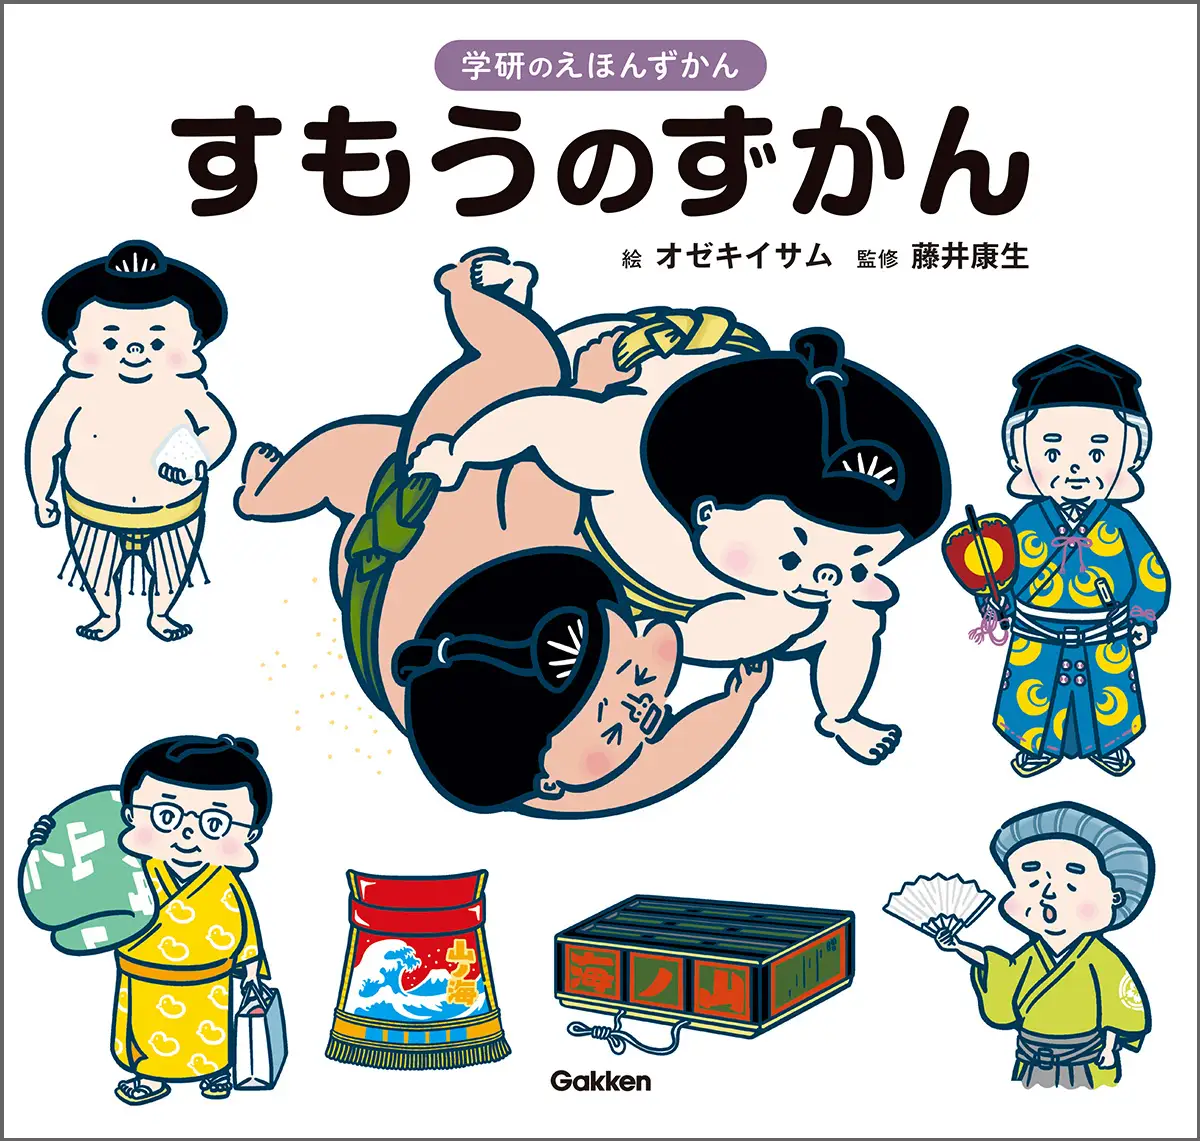 日本相撲協会取材協力！！　はじめての図鑑にもぴったりの「学研のえほんずかん」シリーズから、日本の国技「相撲」がよくわかる『すもうのずかん』が登場！